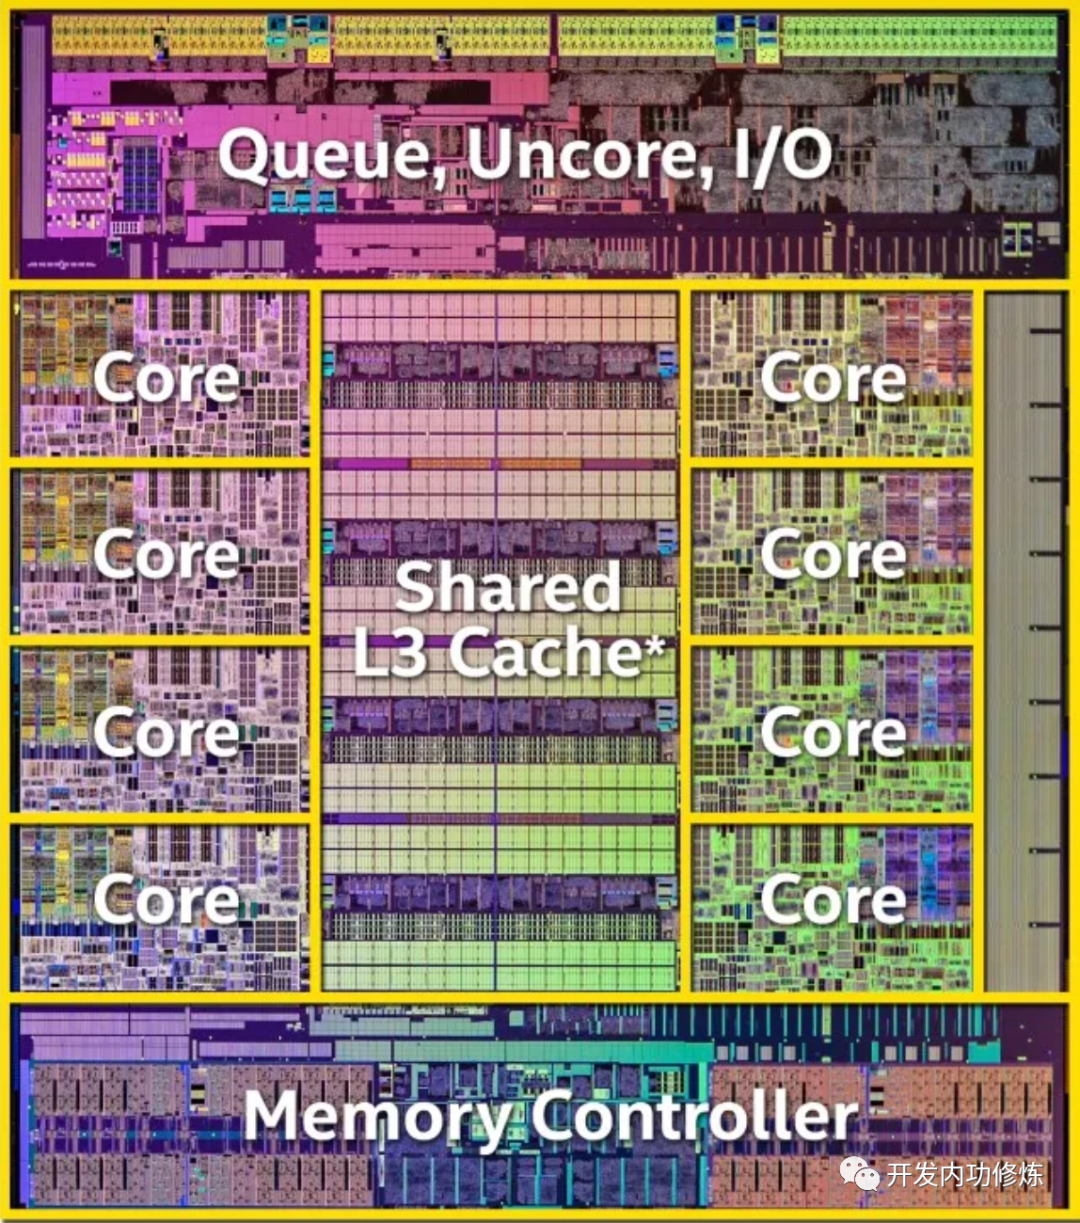 人人都应该知道的CPU缓存运行效率